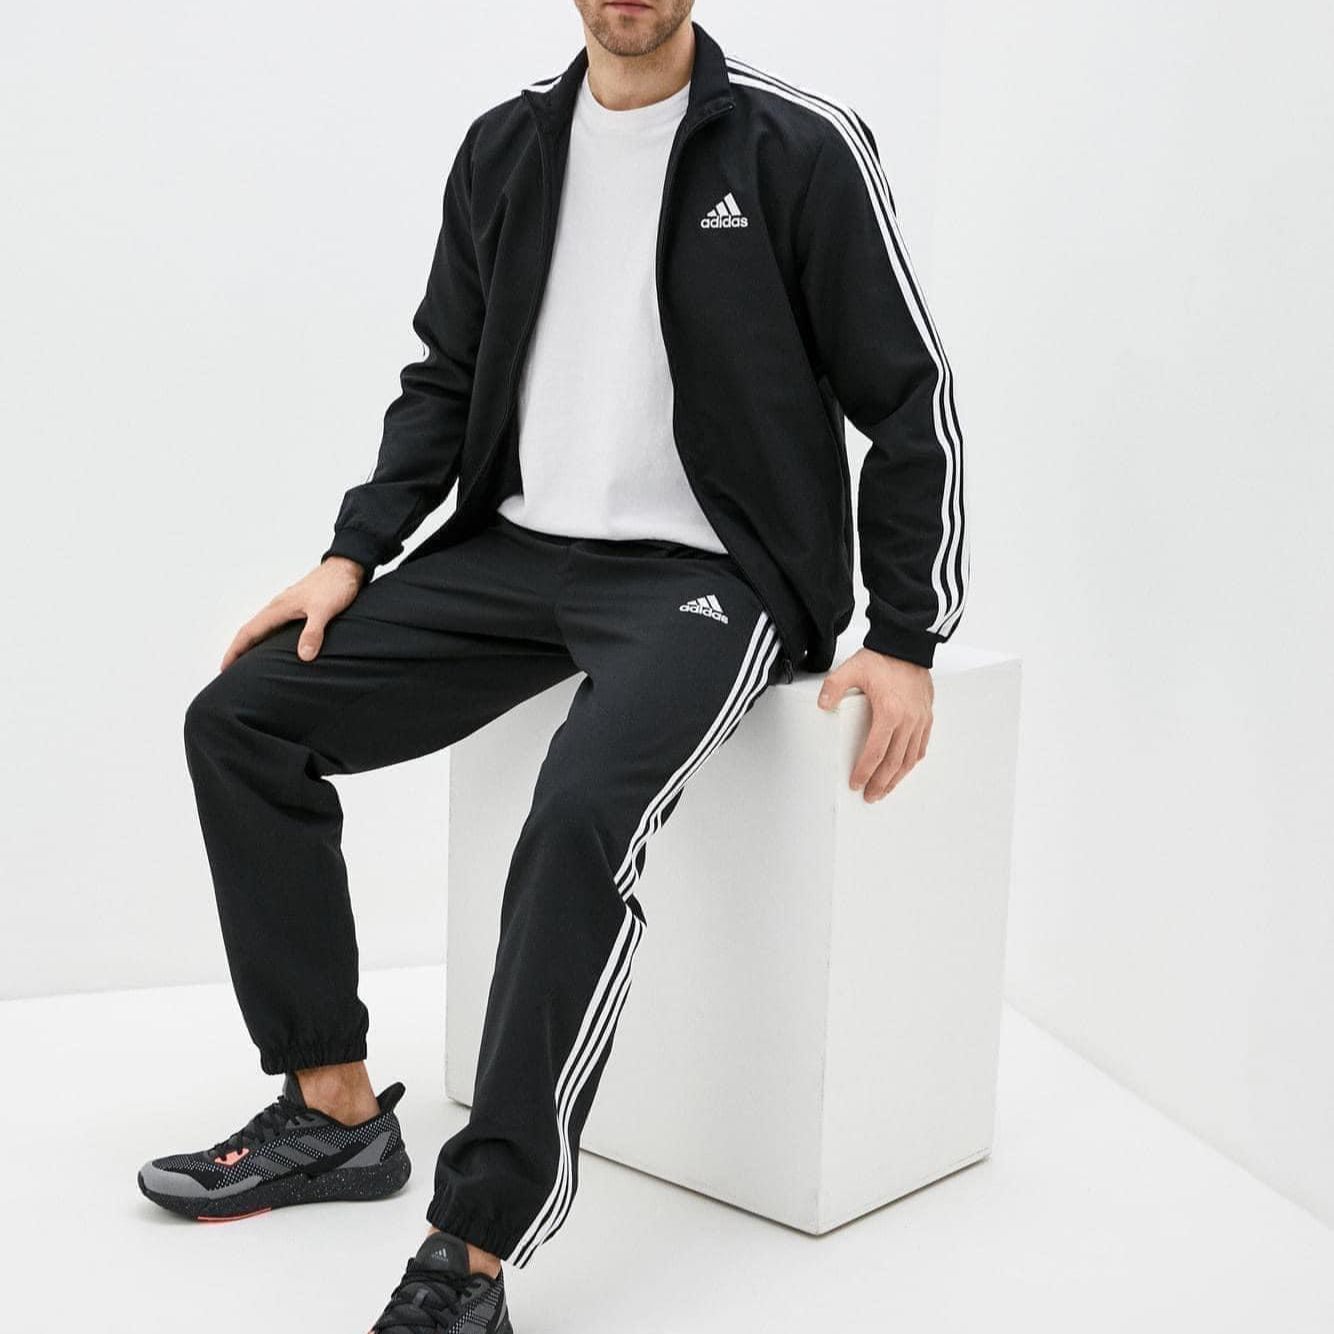 100% CHÍNH HÃNG - Bộ thể thao hè thu Adidas poly đen chất gió - GK9950 |  